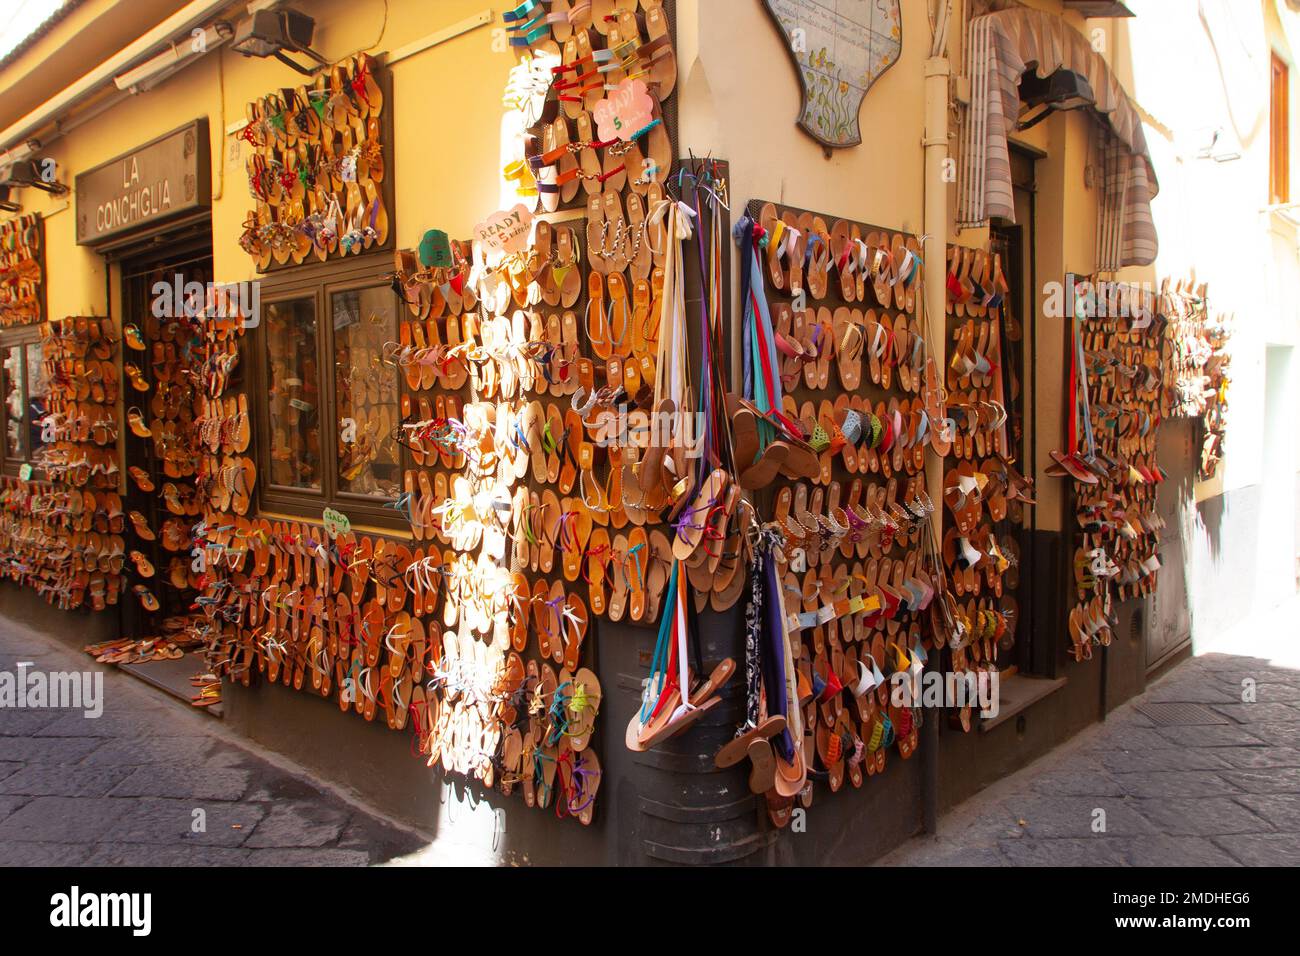 Souvenirs shop Sorrento town centre, Sorrento, Italy Stock Photo